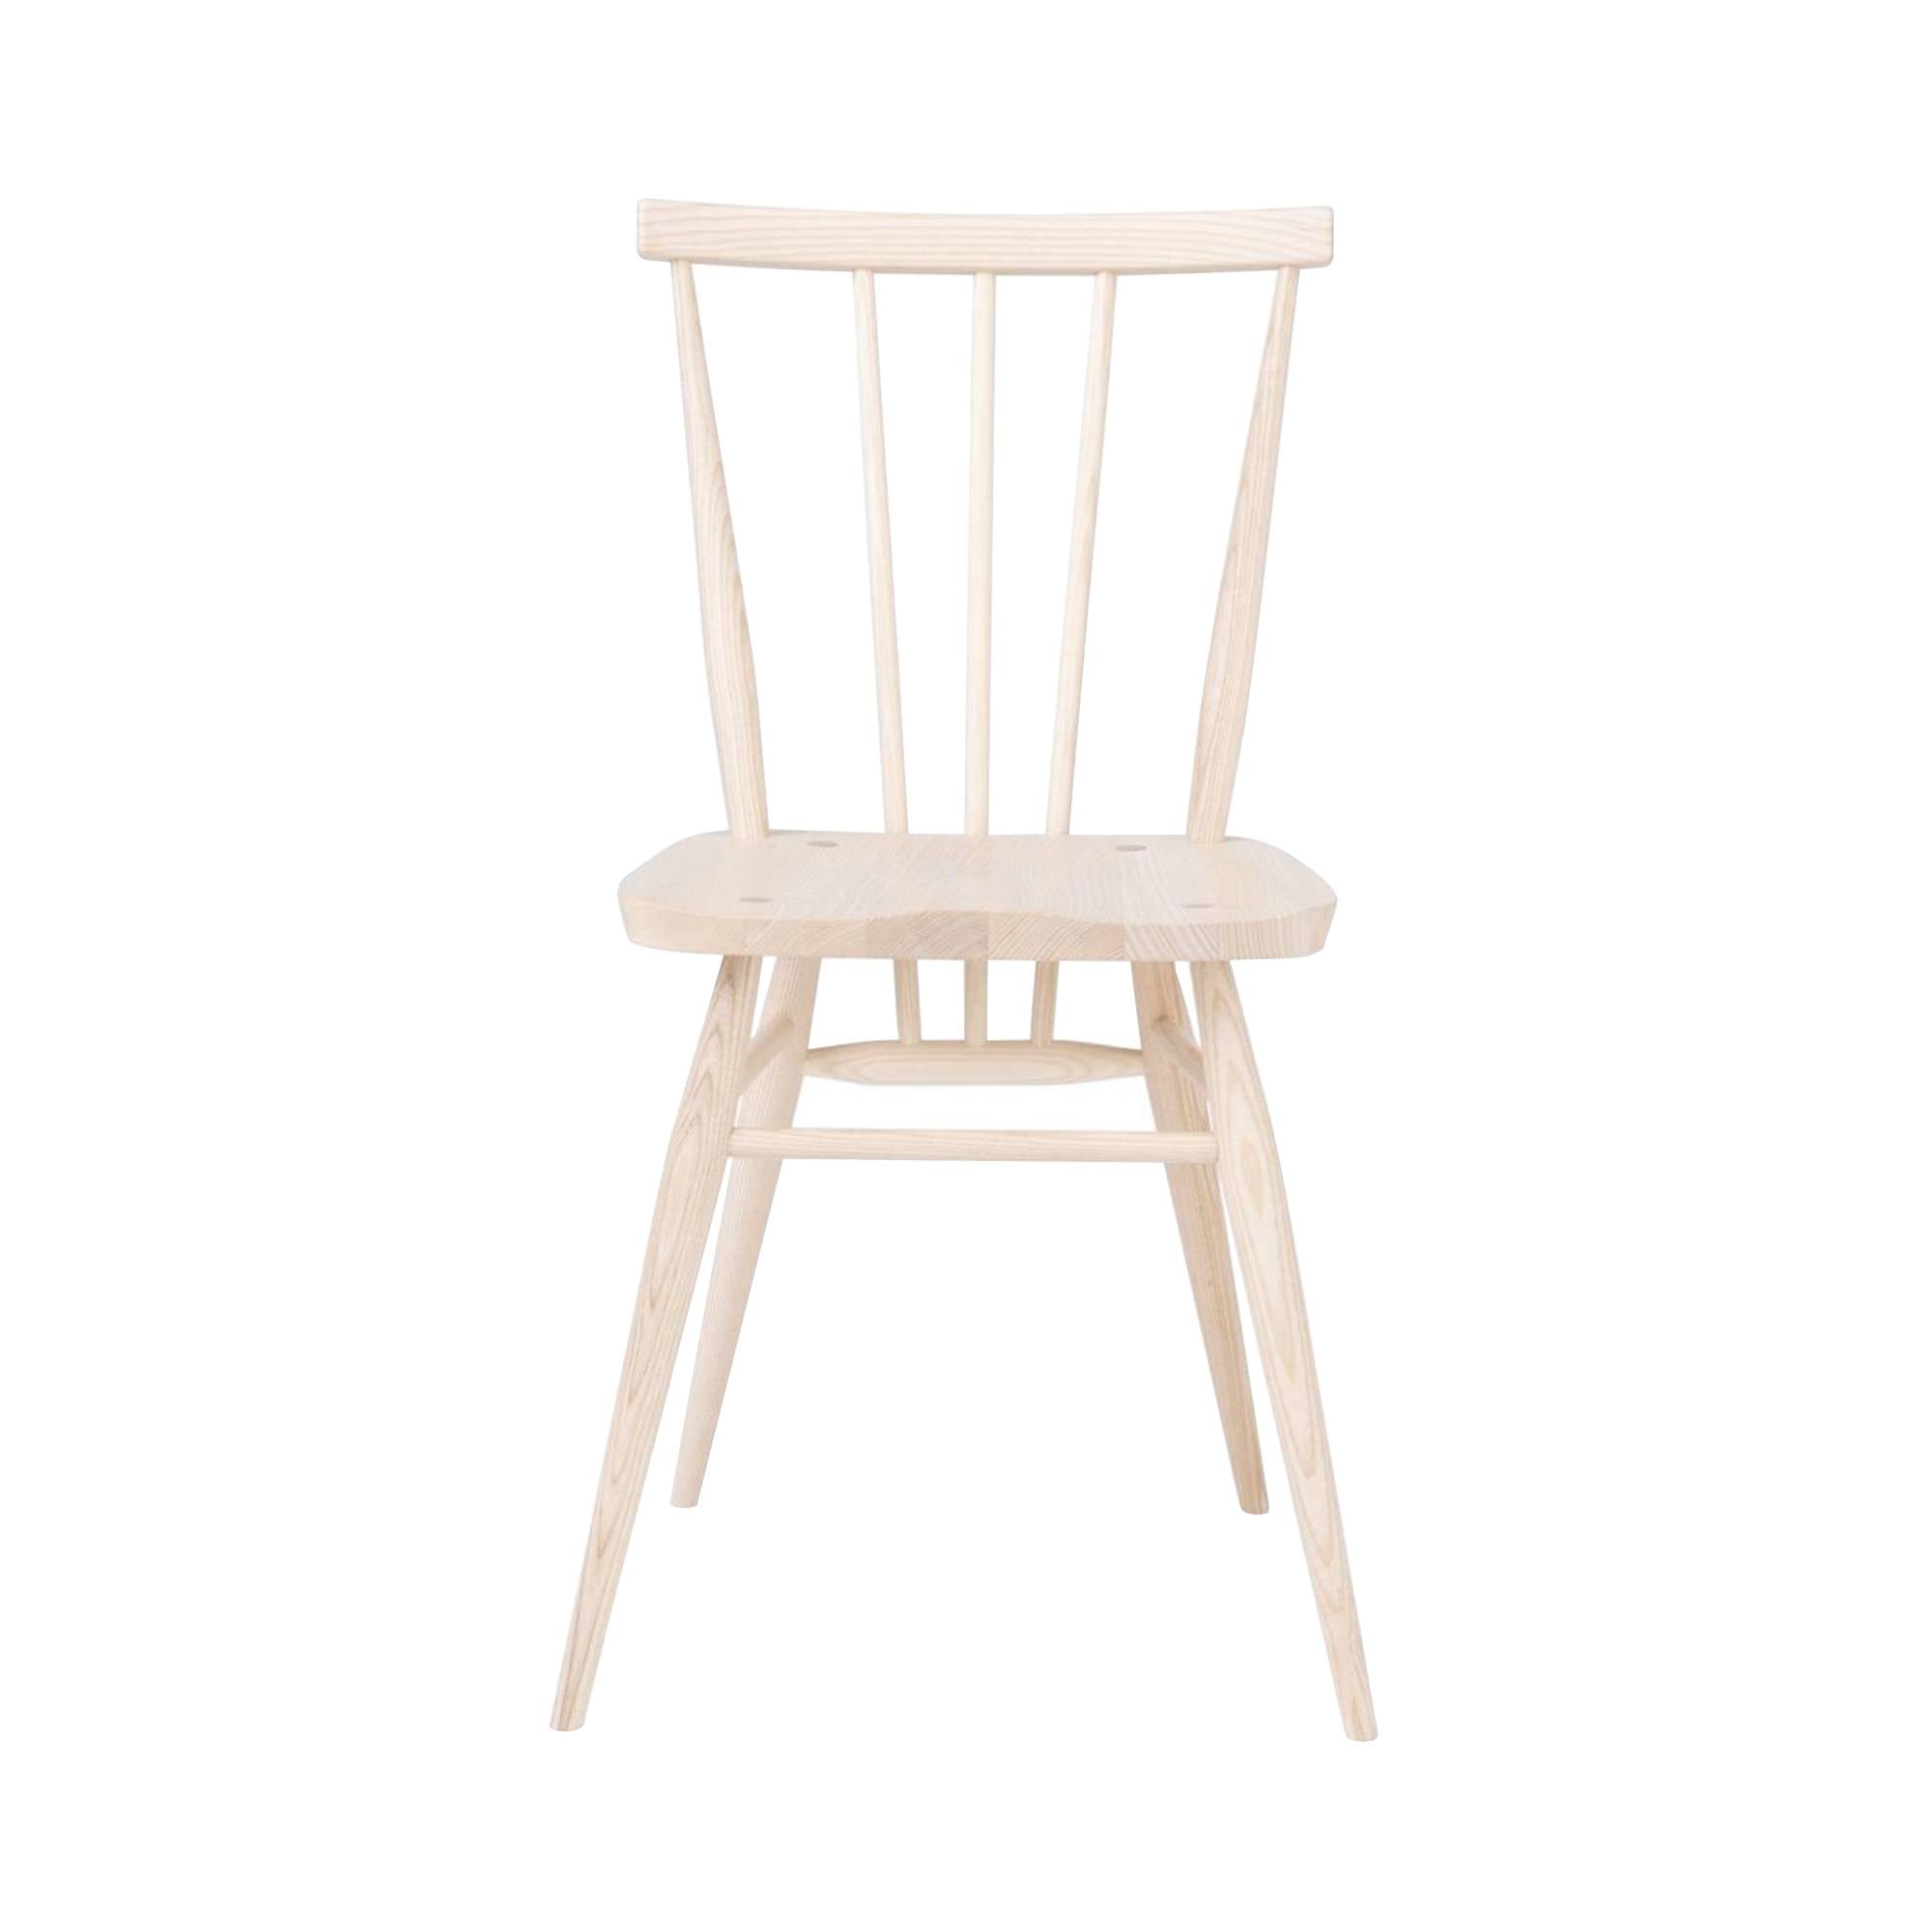 Originals All-Purpose Chair: Natural Ash